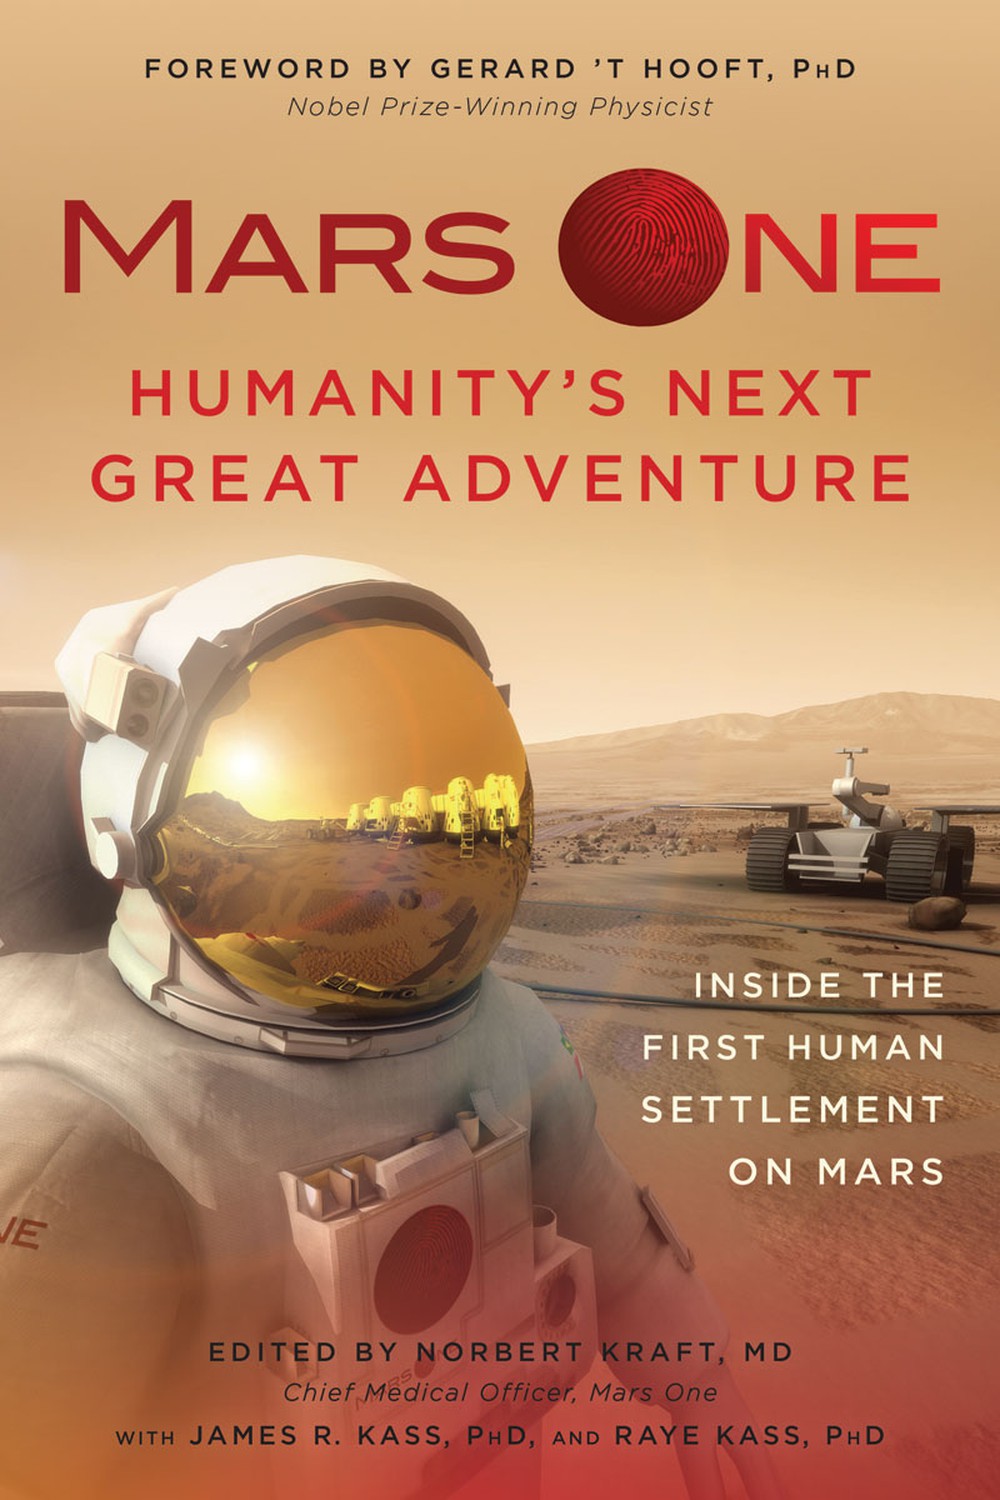 Đưa con người lên Sao Hỏa sinh sống vào năm 2031 có thực sự khả thi? - Ảnh 2.